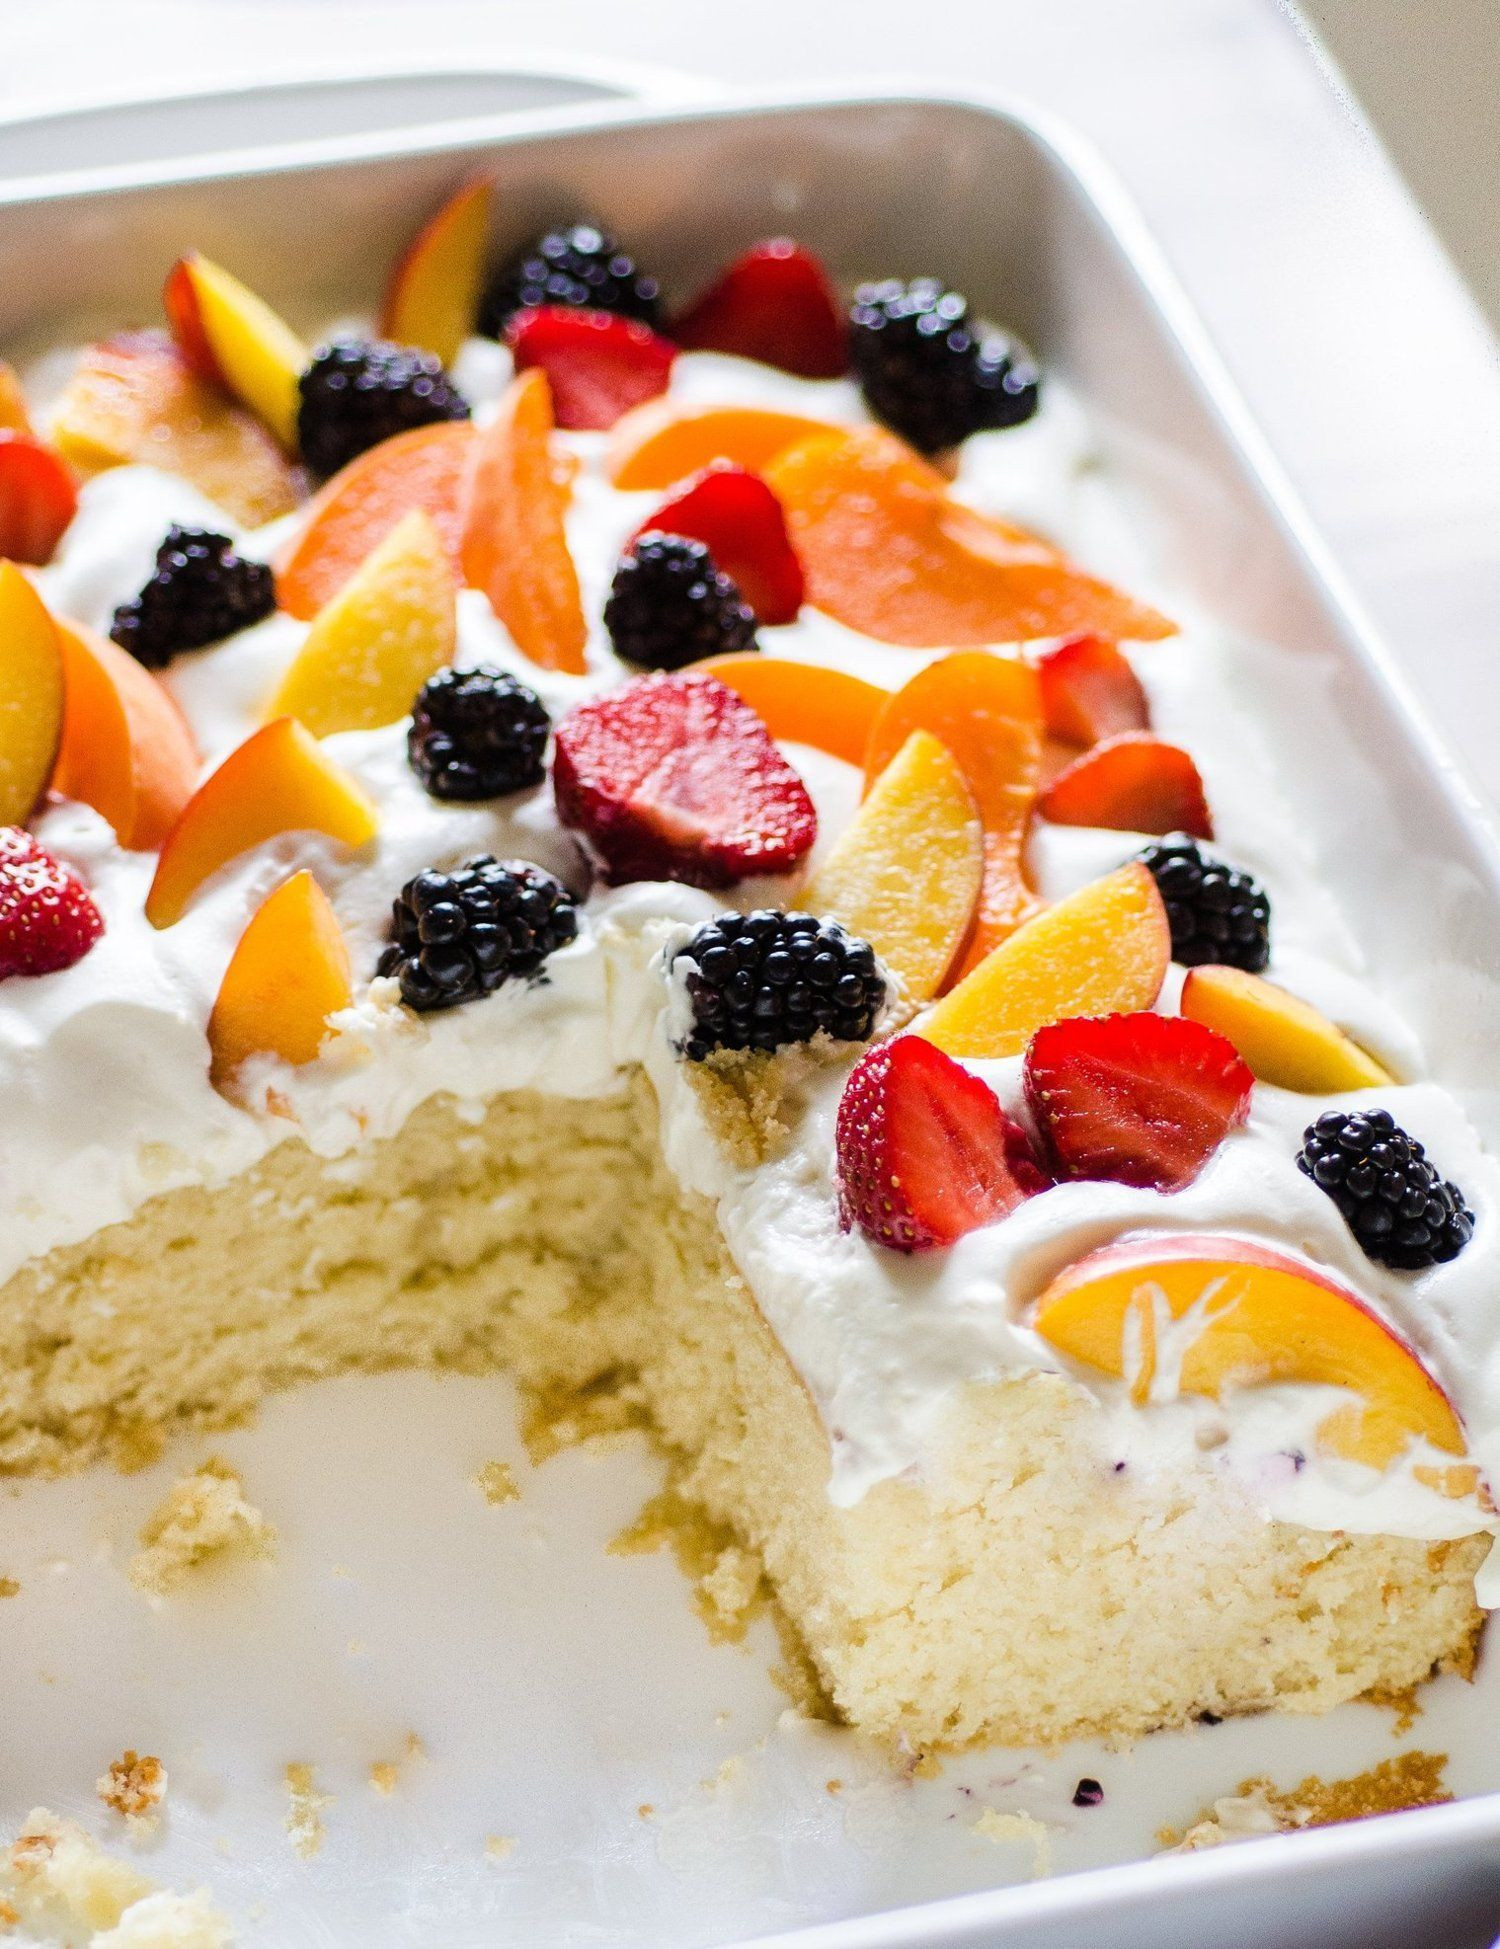 Easy Summertime Desserts
 Recipe Easy Summer Cake with Fruit & Cream — Dessert